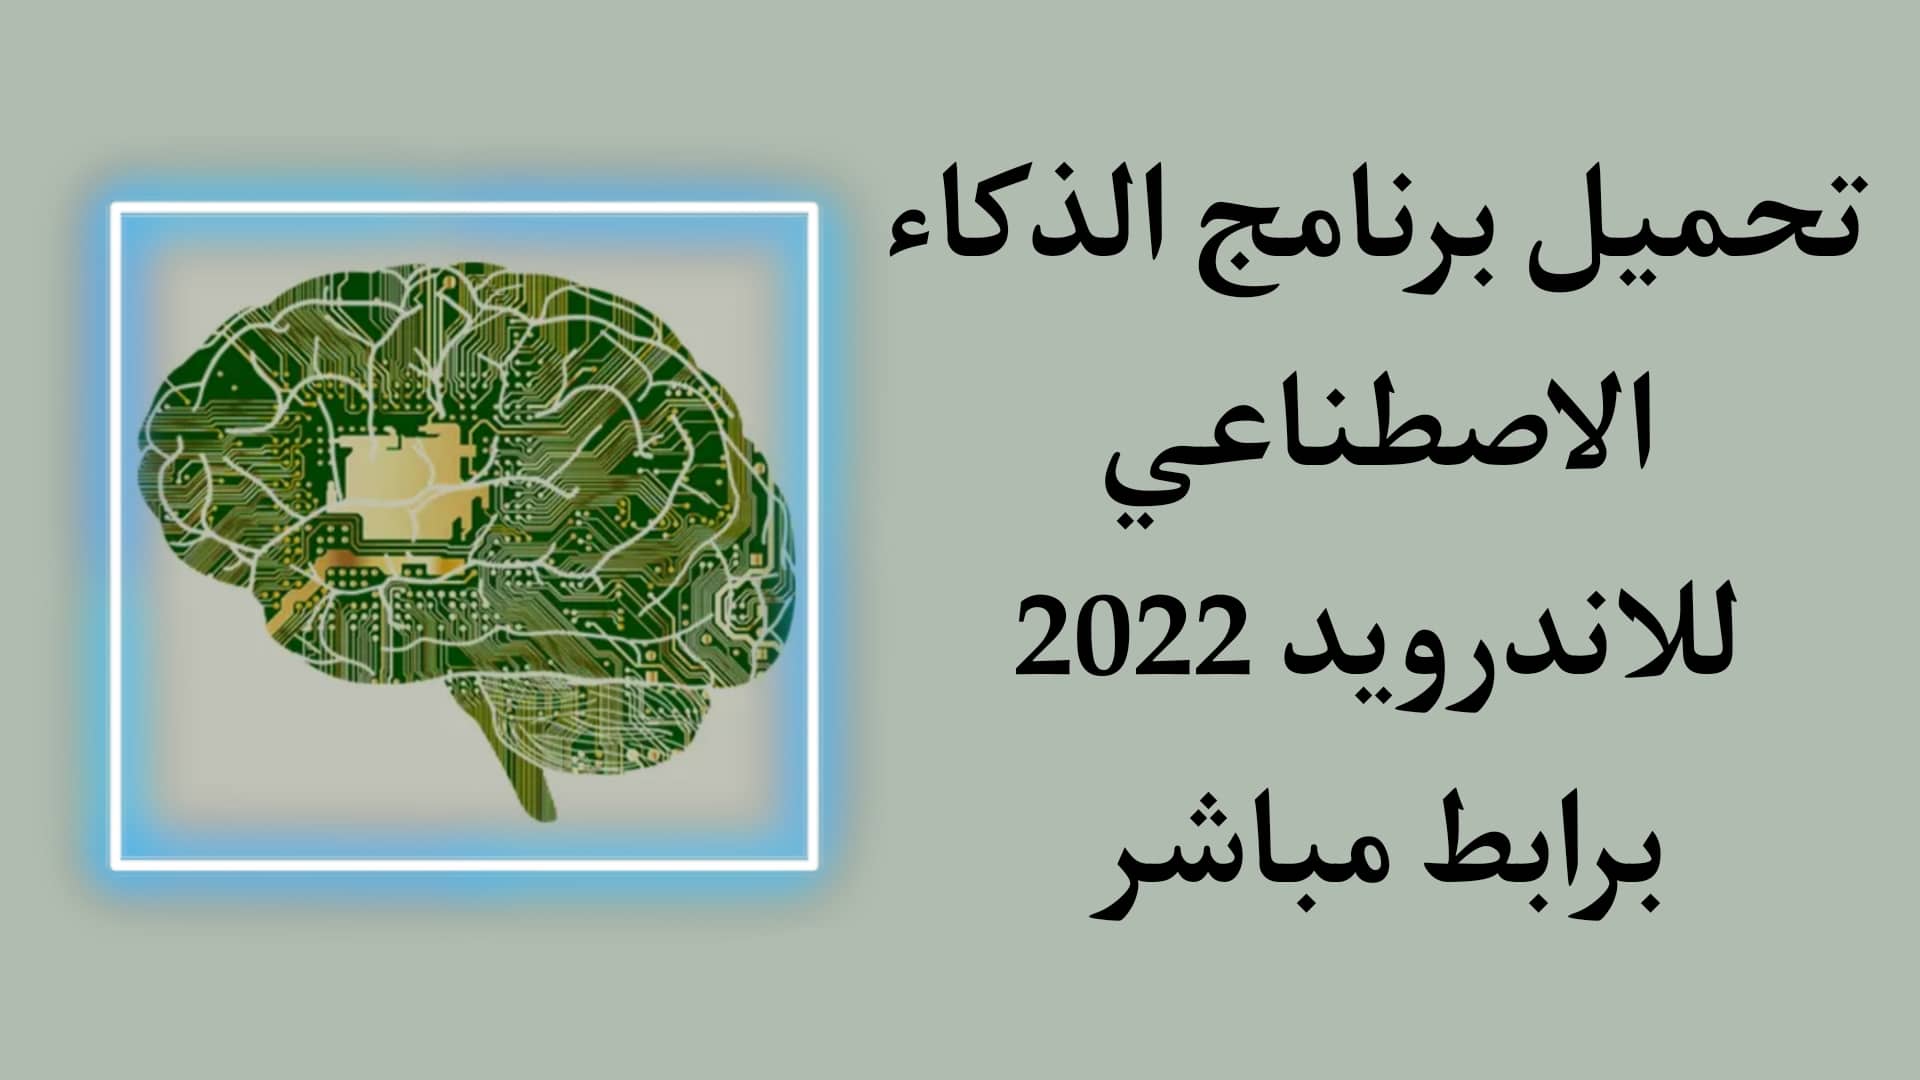 تحميل برنامج الذكاء الاصطناعي 2022 بالعربي للاندرويد